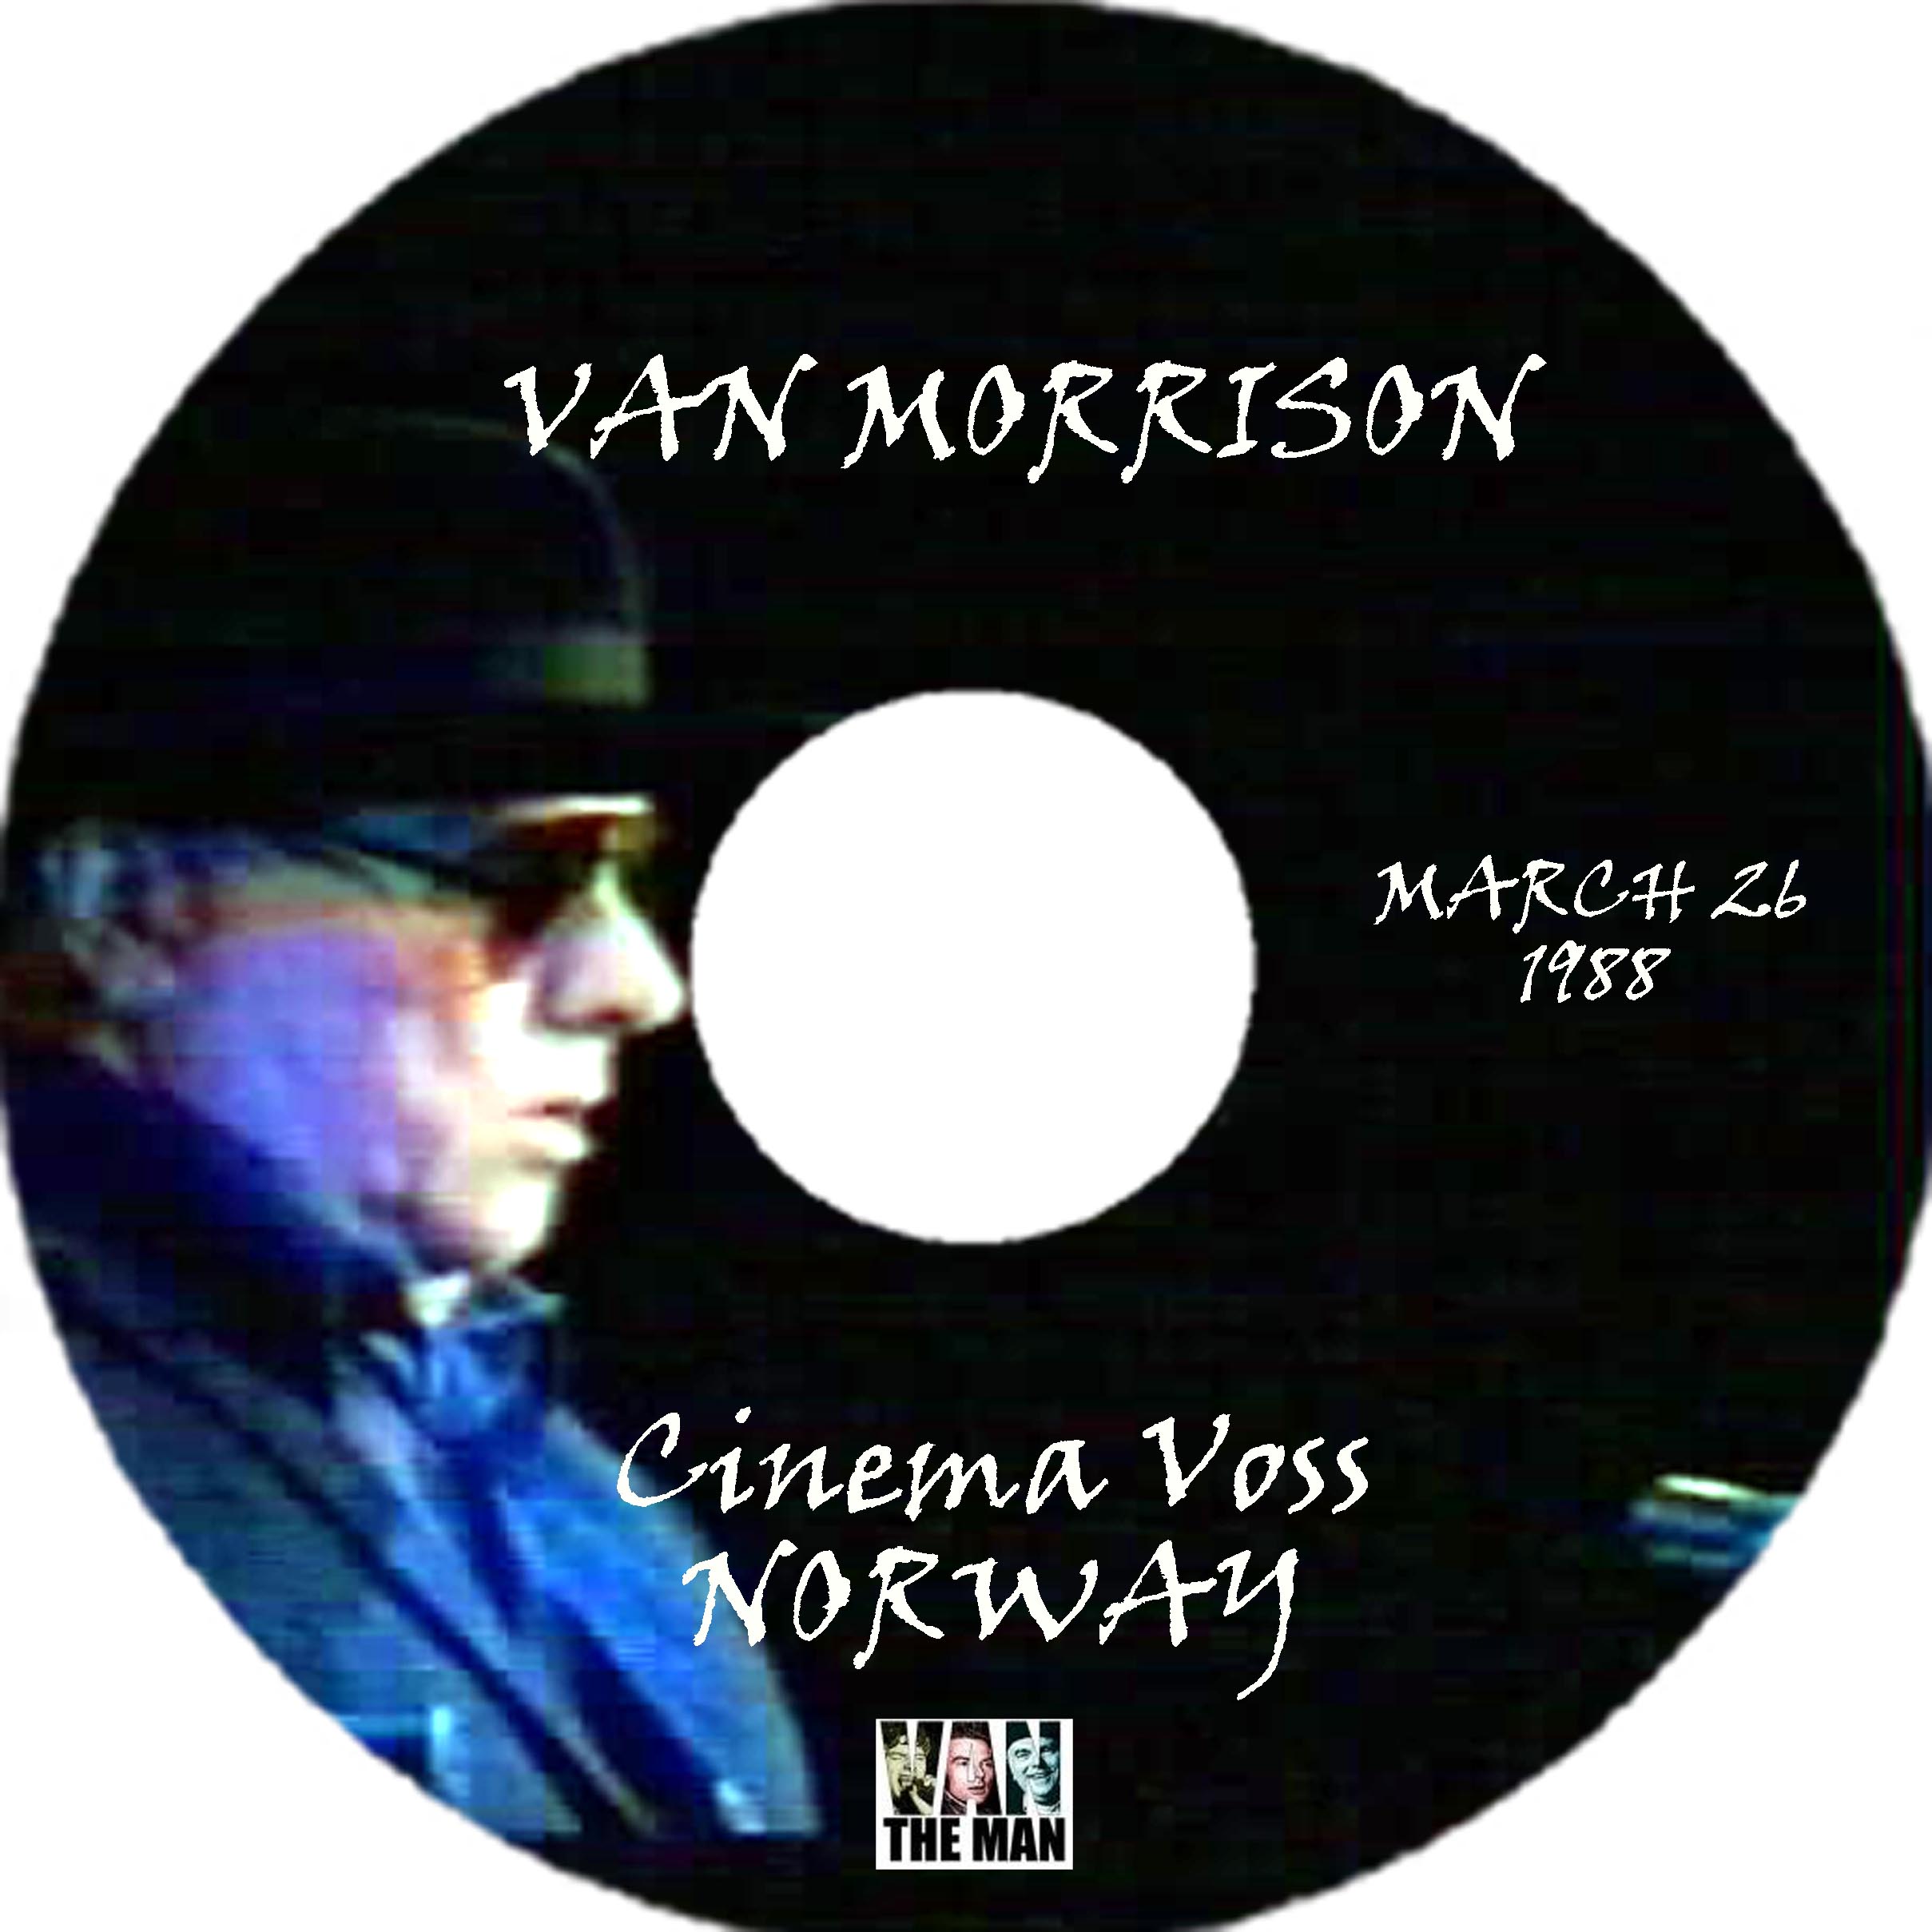 VanMorrison1988-03-25withTheRuneKlakeggBandVossKinoNorway (5).jpg